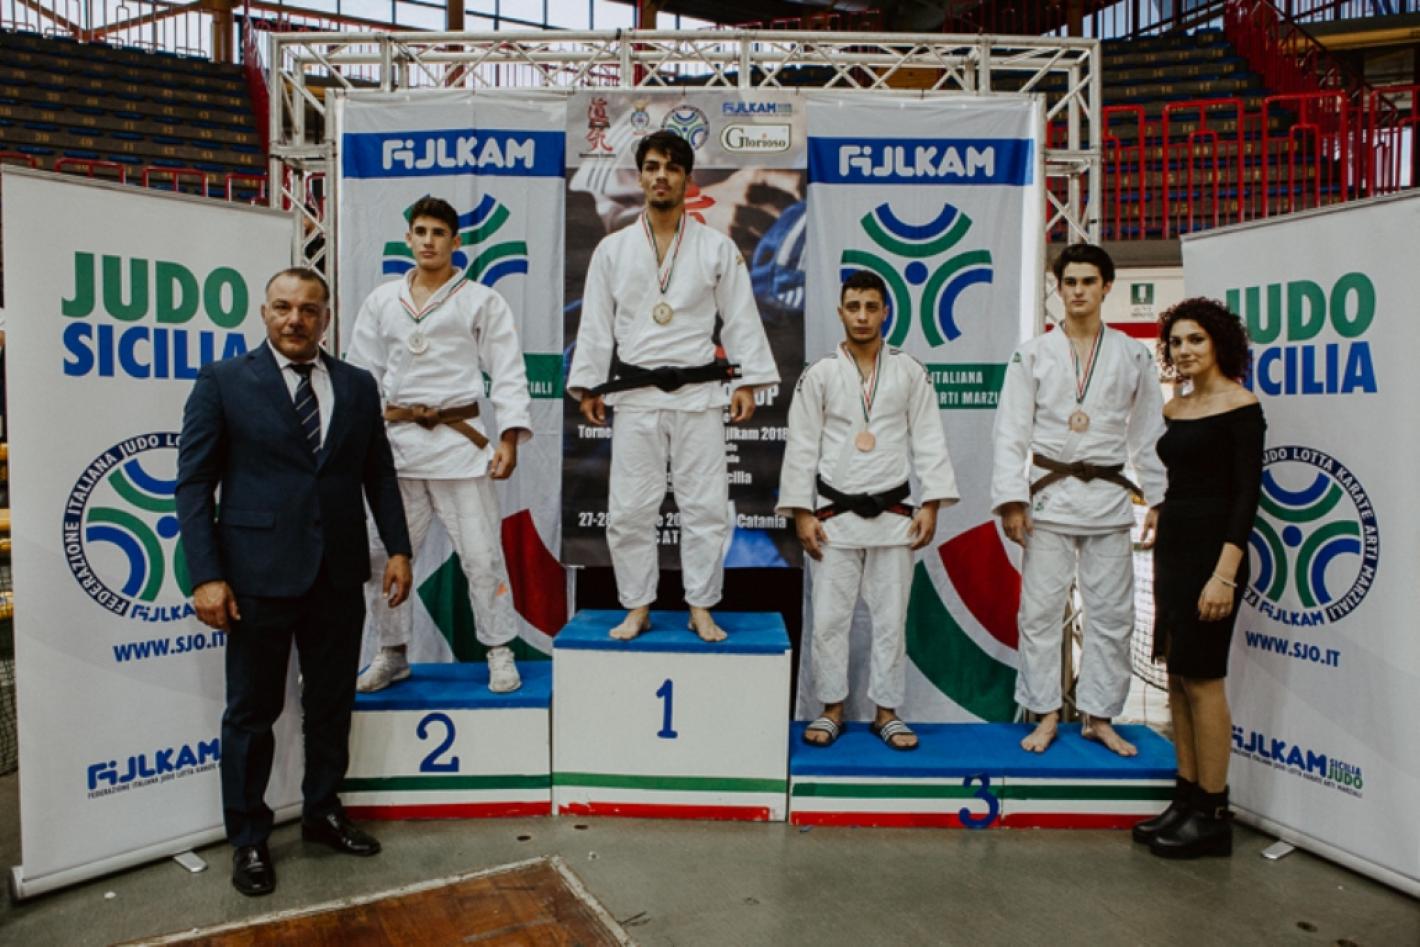 images/veneto/Judo/2018/medium/podio-catania-dario.jpg